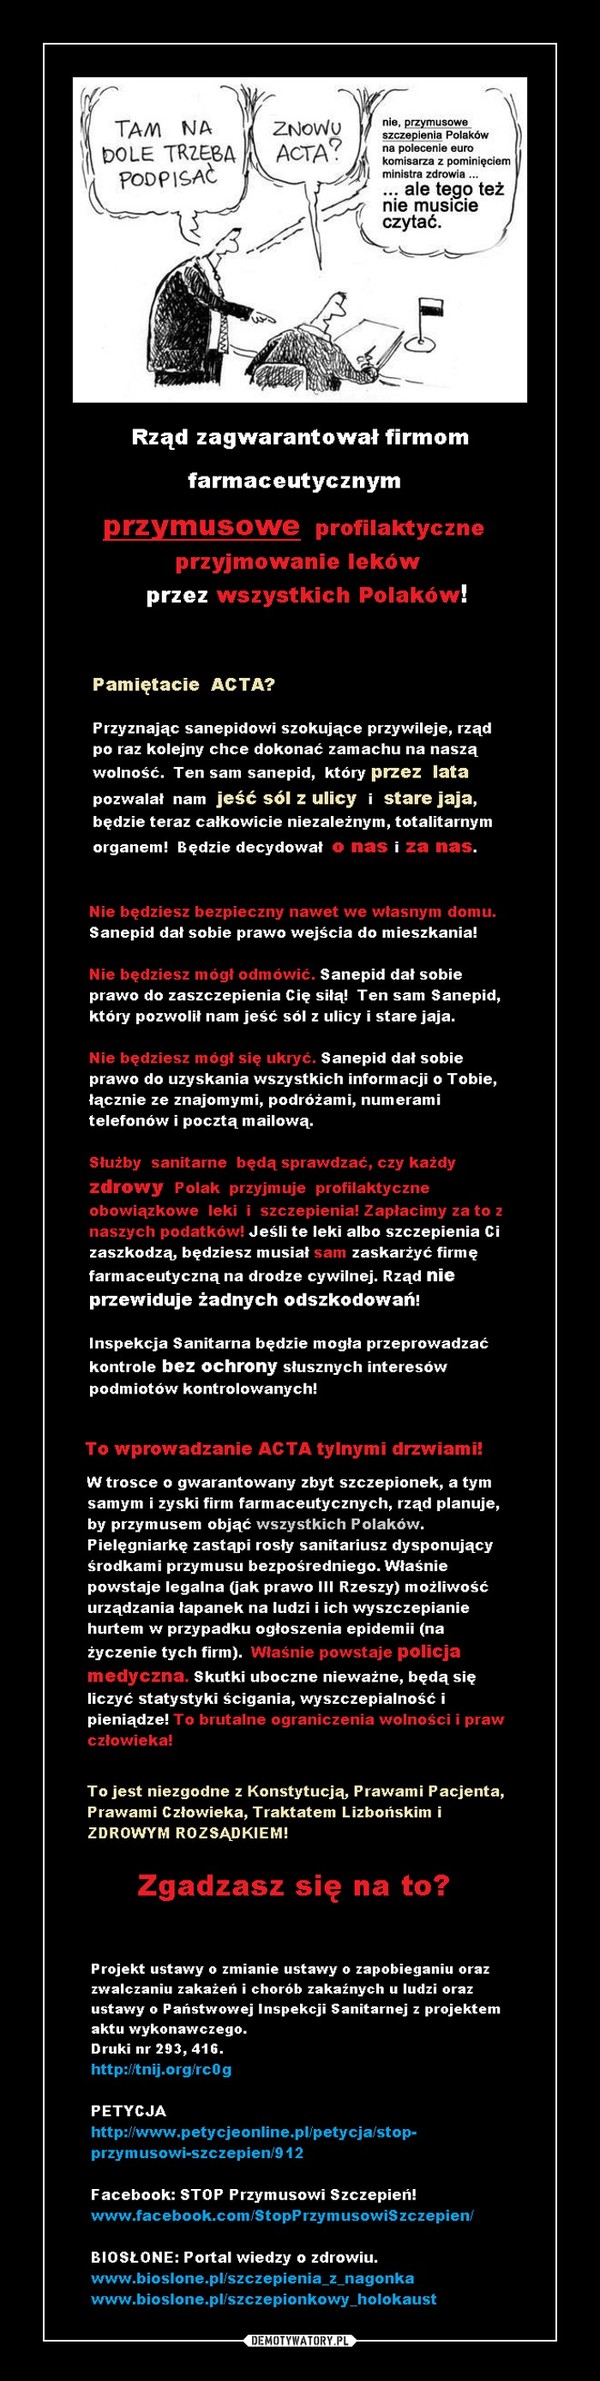 Pamiętacie ACTA?